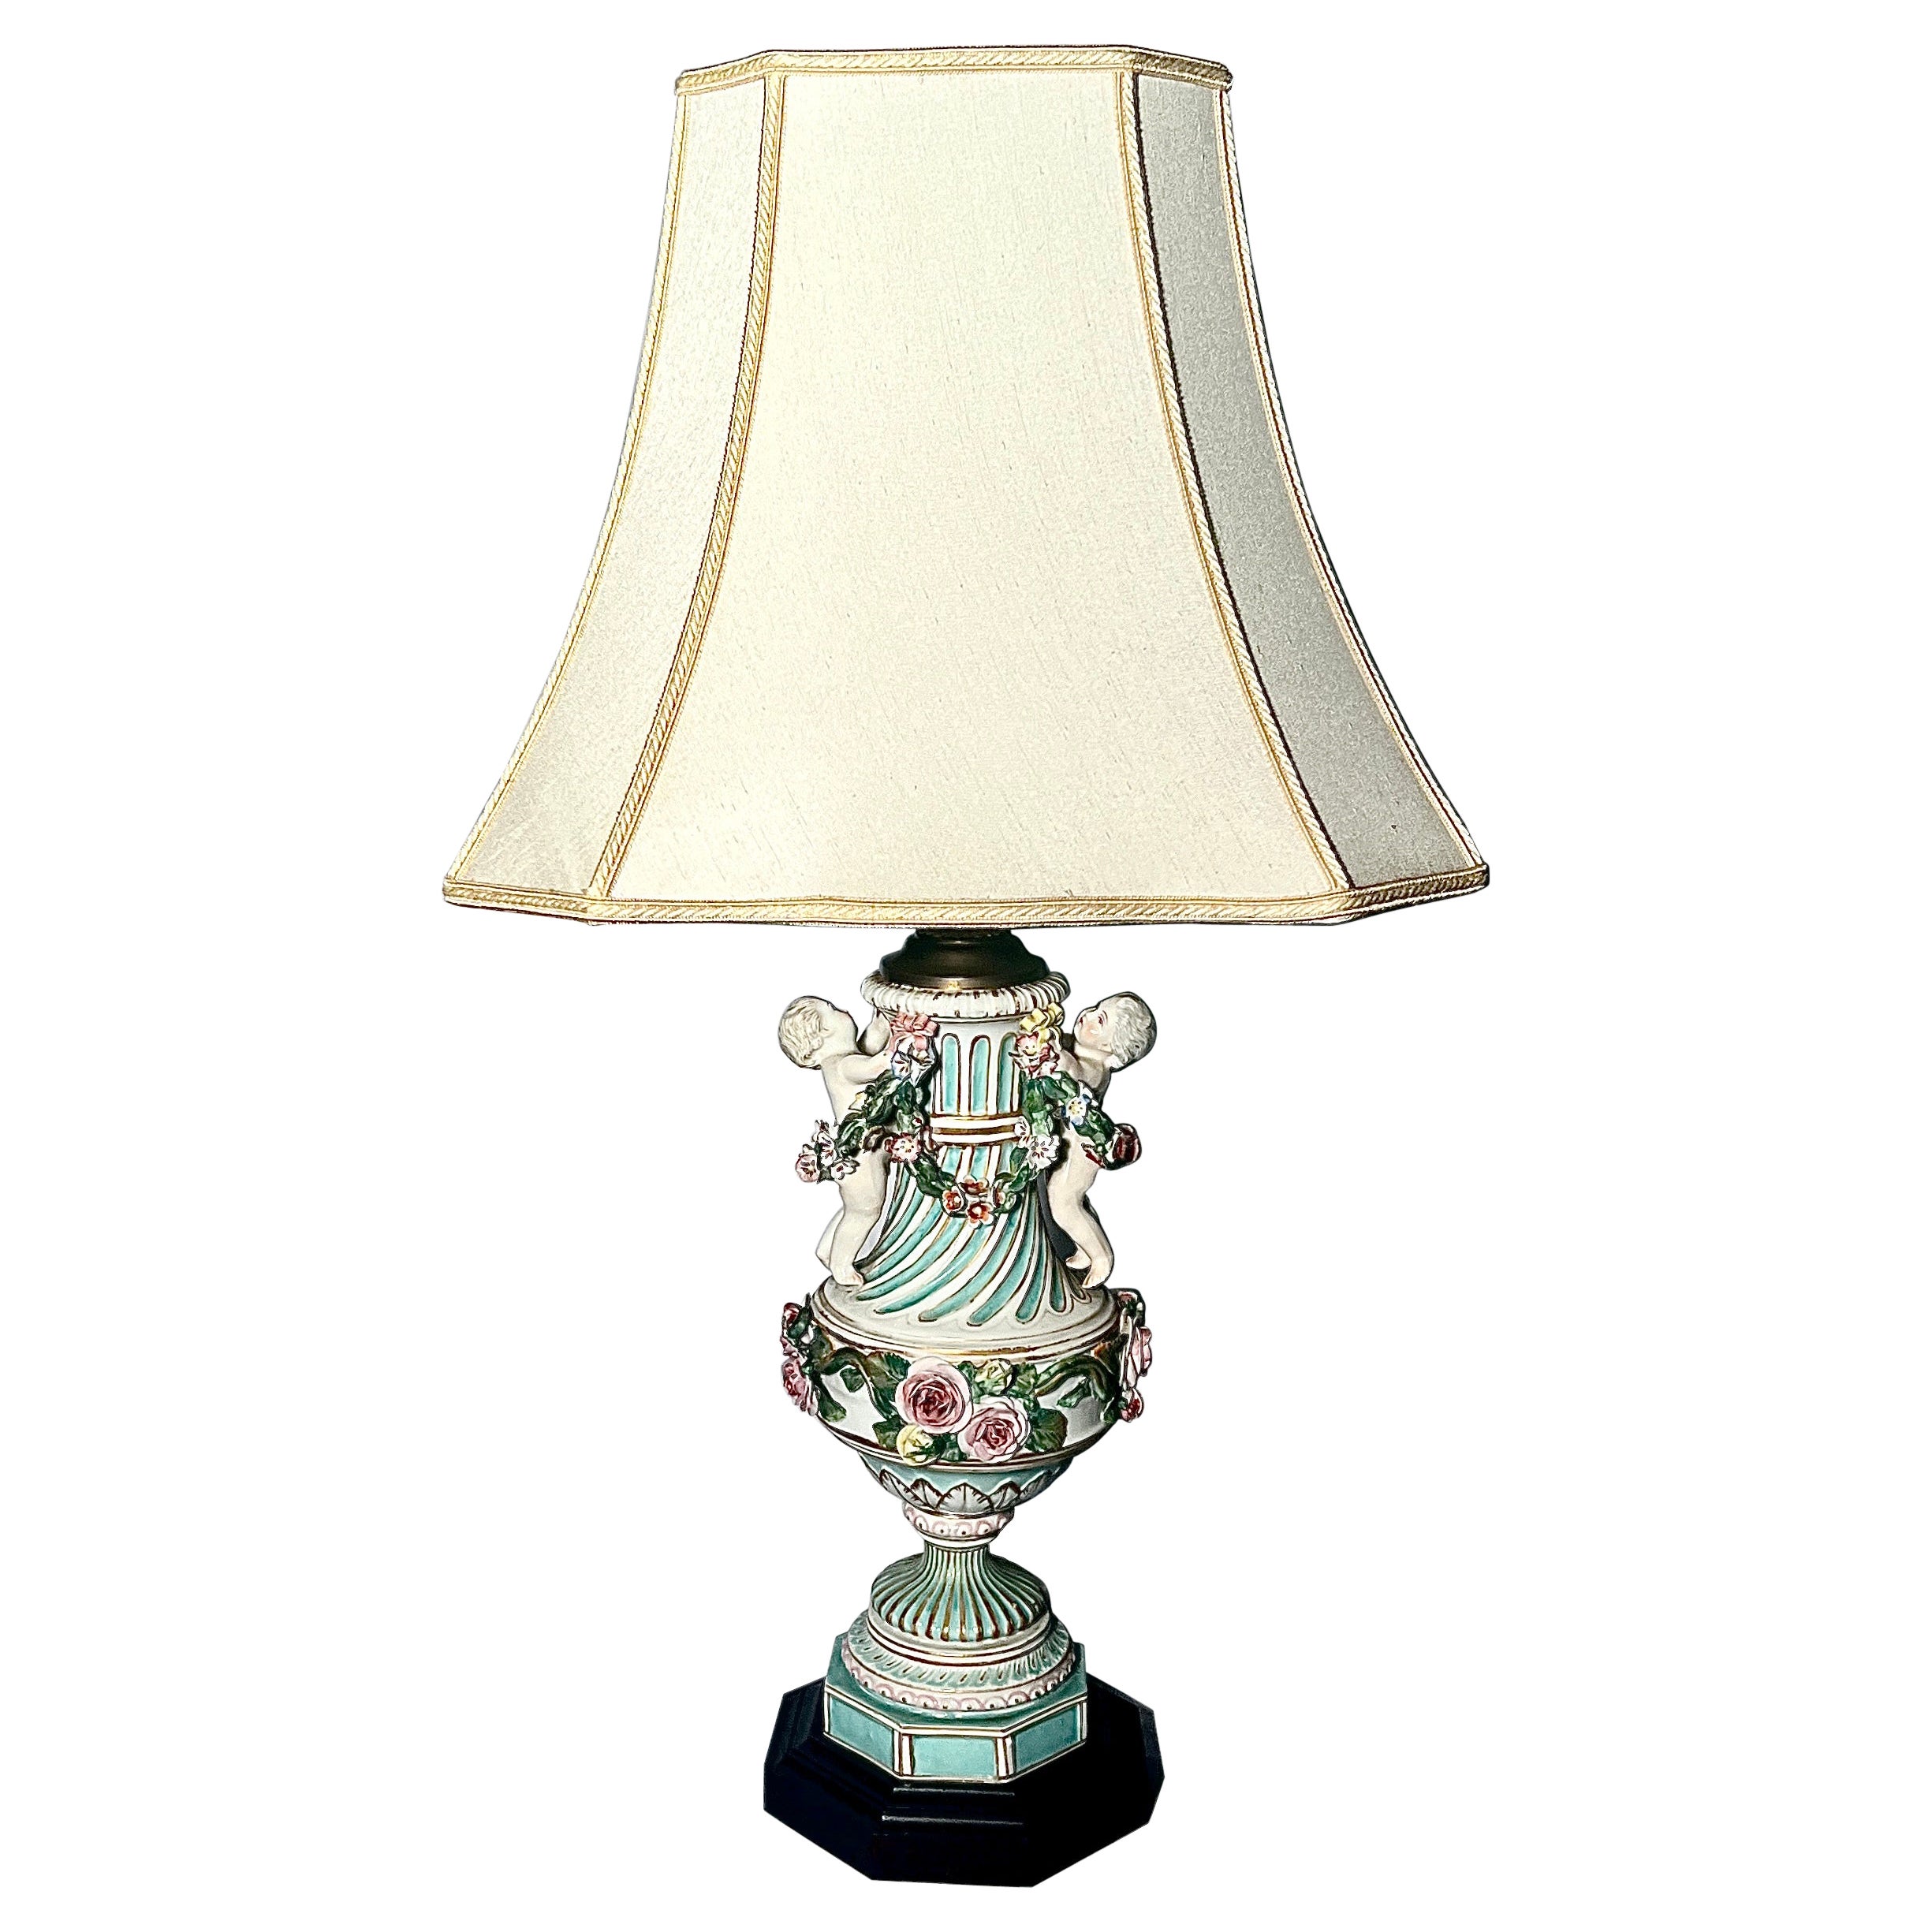 Ancienne lampe florale en porcelaine de Dresde allemande du 19e siècle, vers 1885.